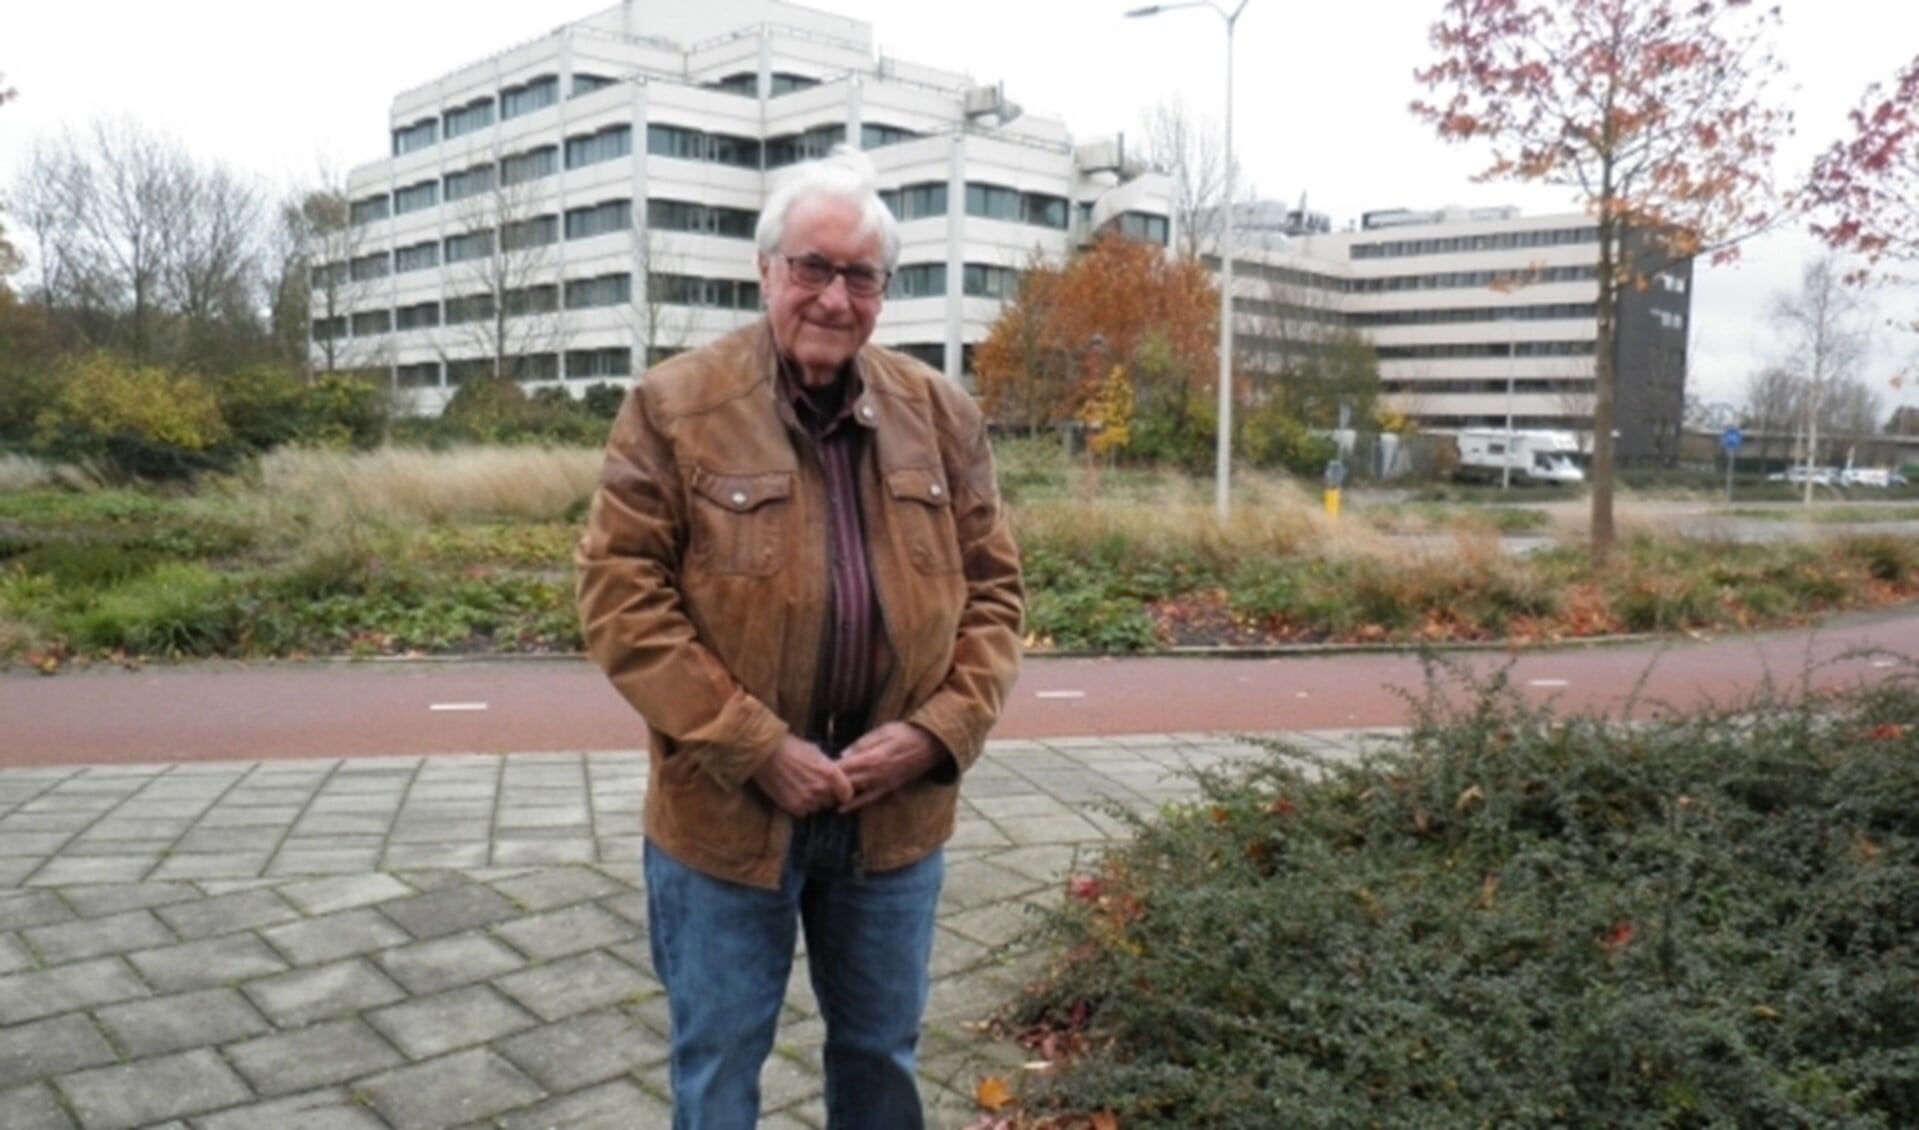 Voorzitter van BADE, Jacques van der Meer, aan het Bredewater voor kantoorgebouwen, die straks verdwijnen. Foto Kees van Rongen